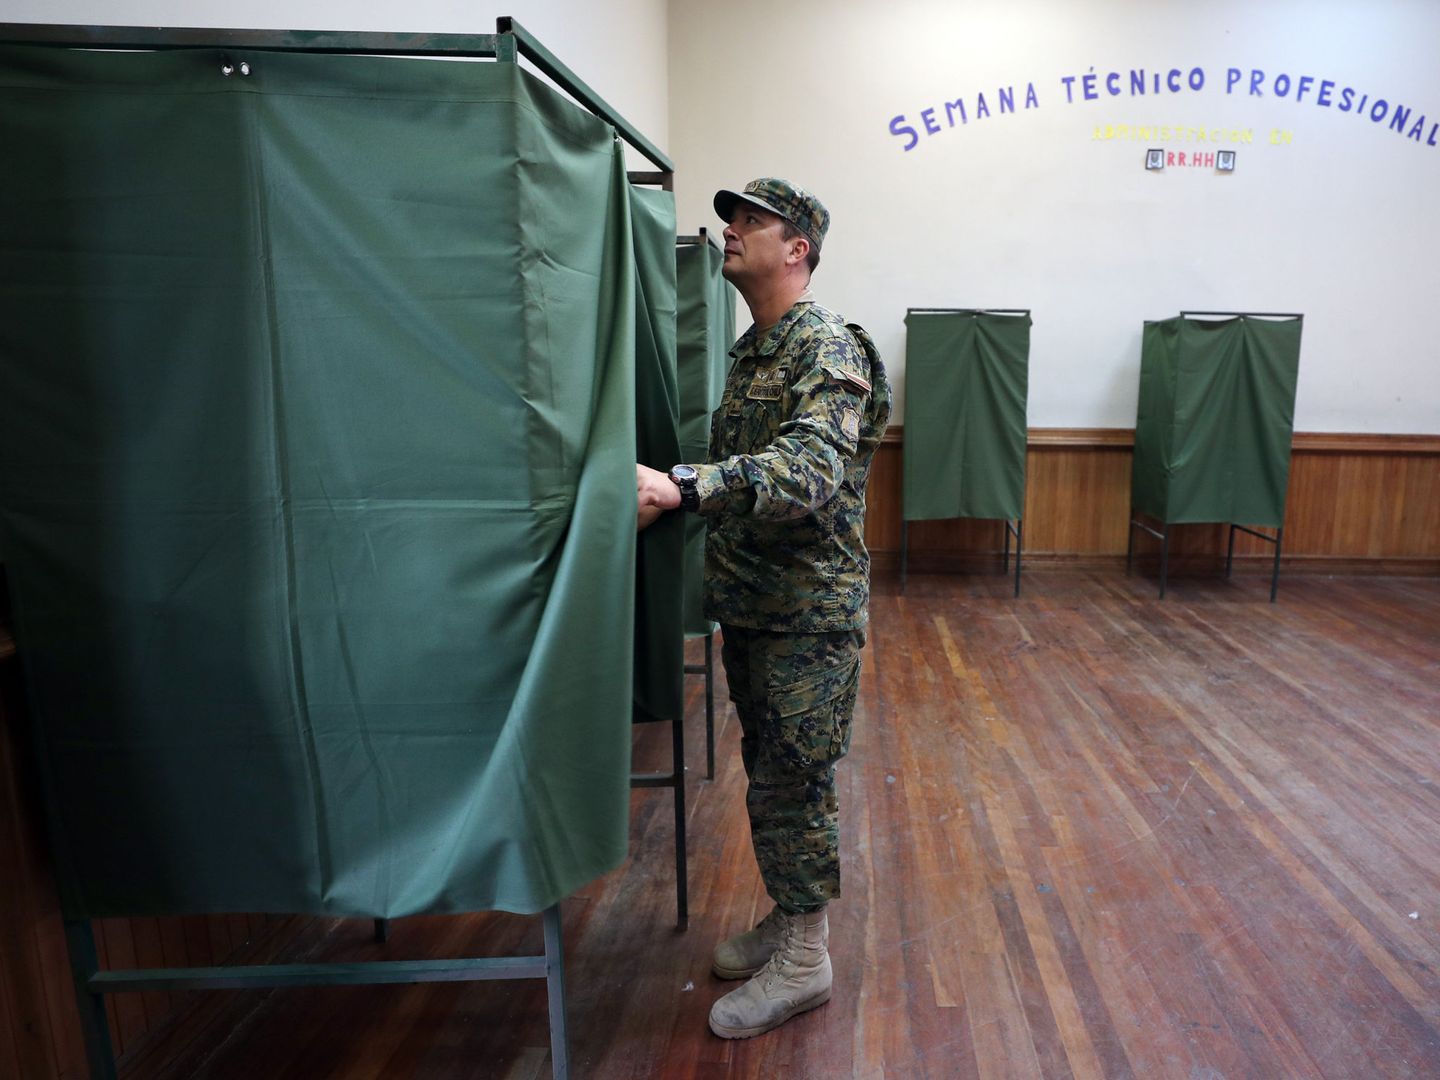 Un militar verifica los puestos de votación en la sede de un colegio electoral, el viernes 15 de diciembre de 2017, en Santiago. (EFE)